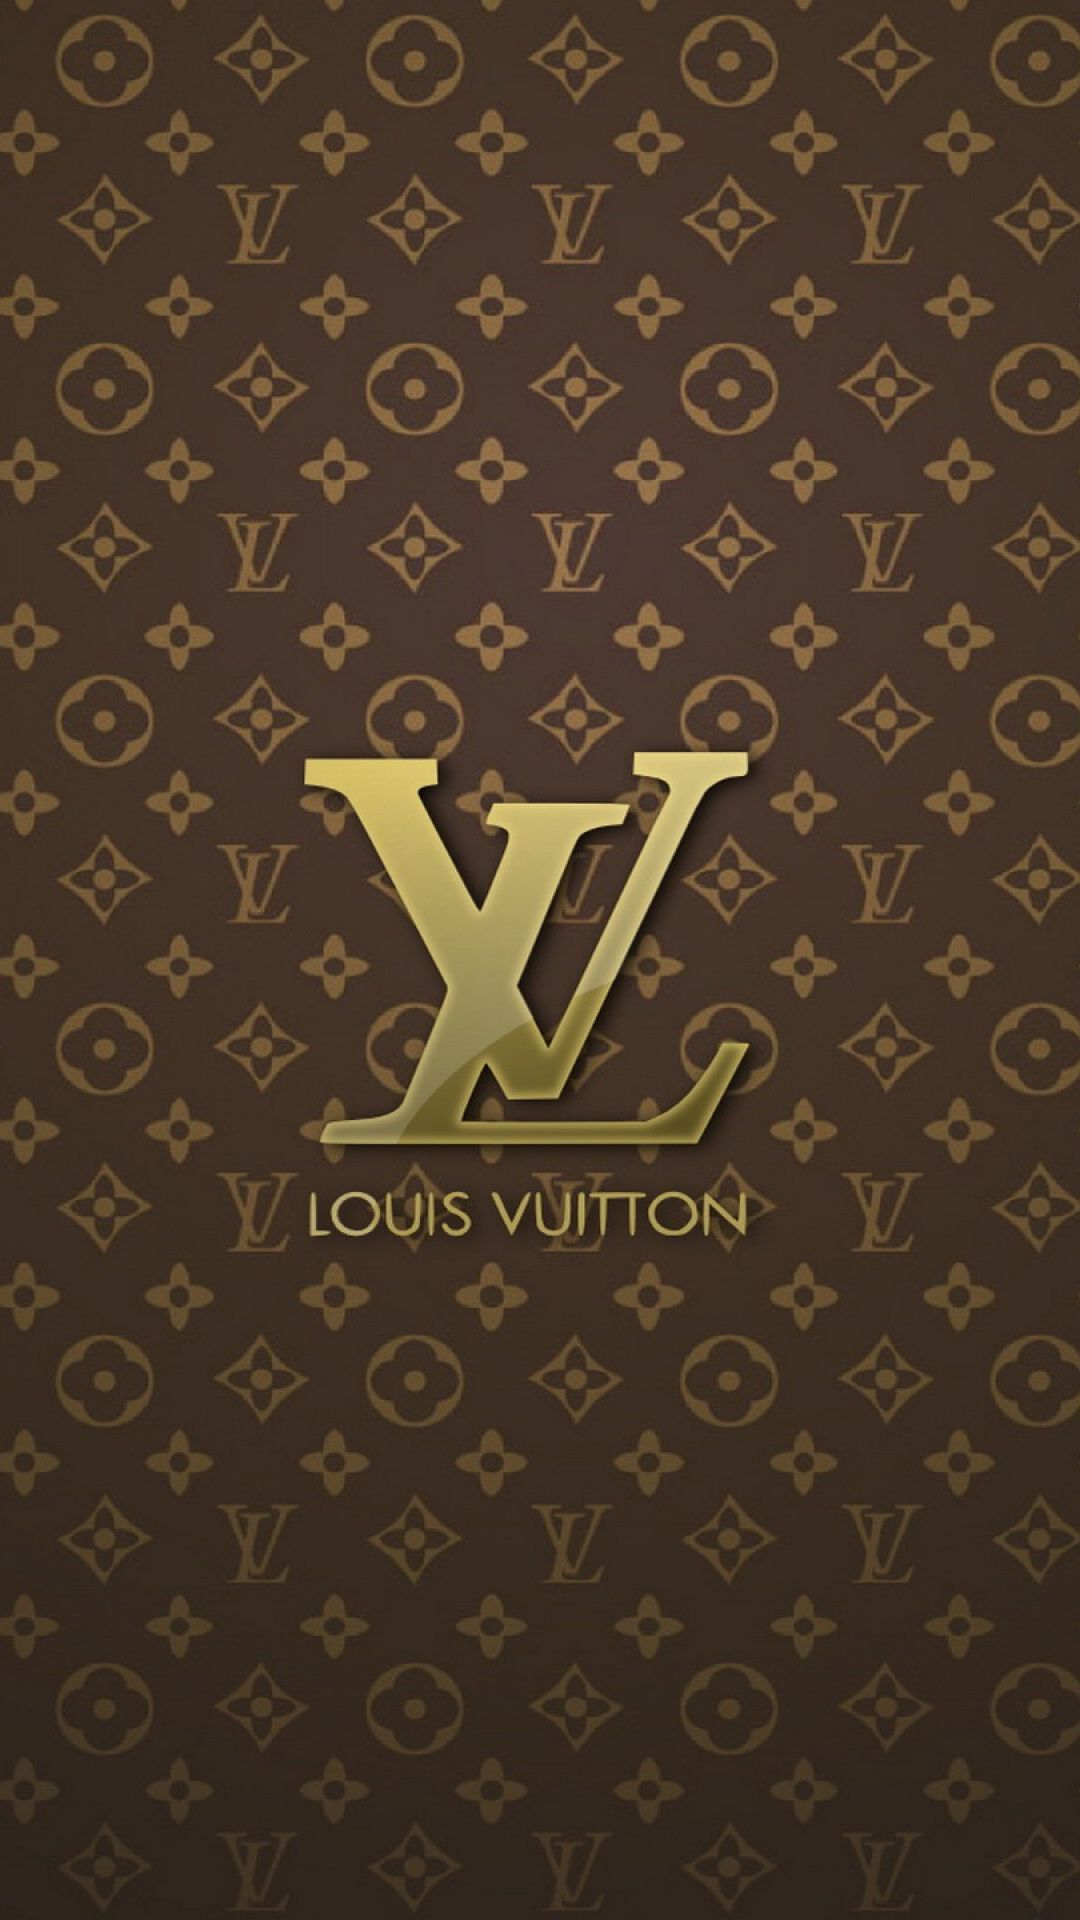 Điểm nhấn mới cho chiếc iPhone của bạn với hình nền Louis Vuitton sang trọng. Sản phẩm chất lượng cao và đẹp mắt này chắc chắn sẽ khiến ai cũng phải ngước nhìn. 